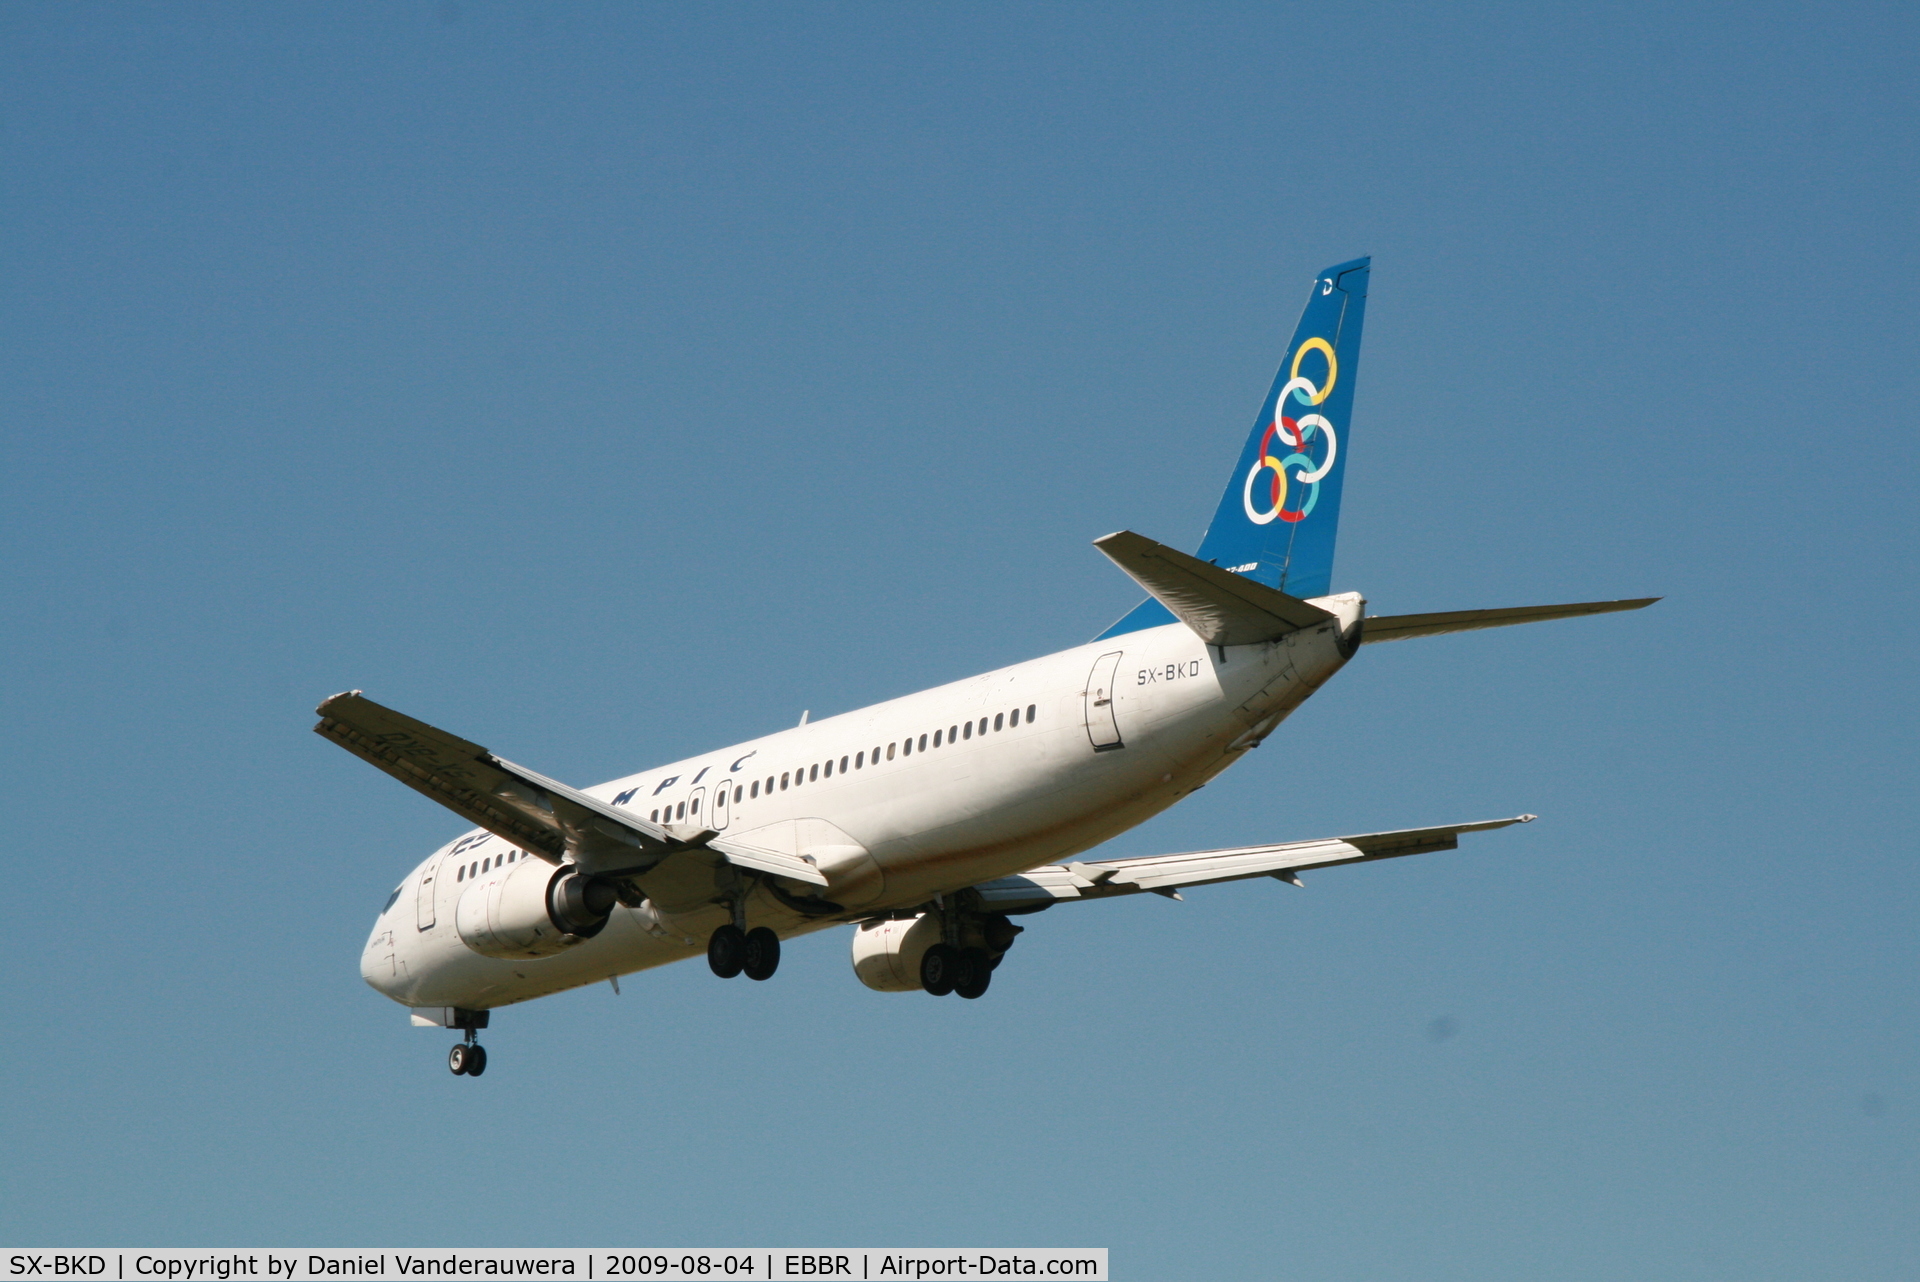 SX-BKD, 1991 Boeing 737-484 C/N 25362, flight OA145 is descending to rwy 25R